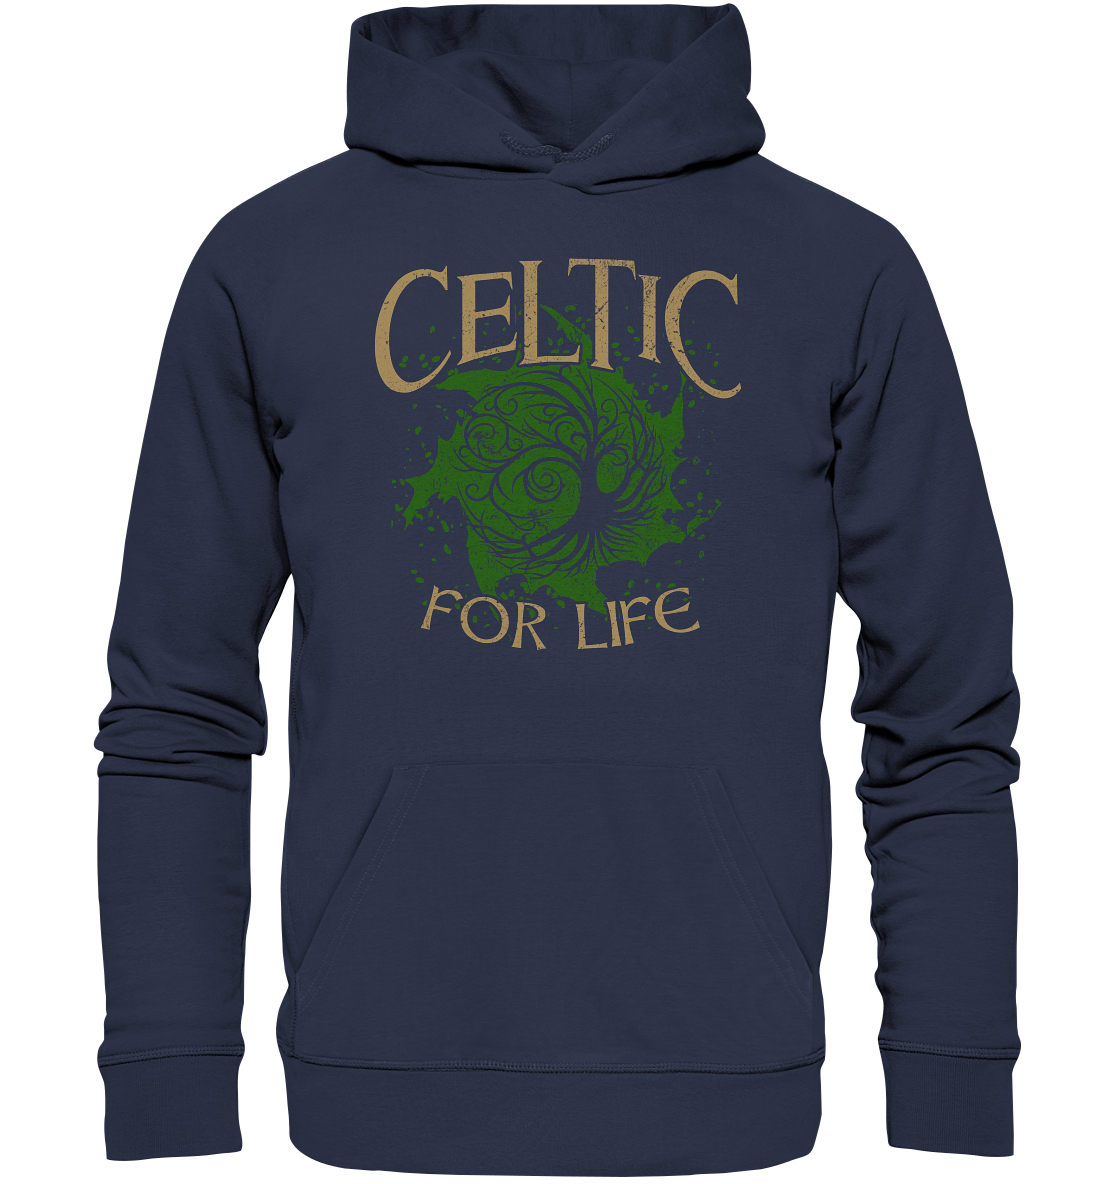 Celtic "For Life" - Premium Unisex Hoodie